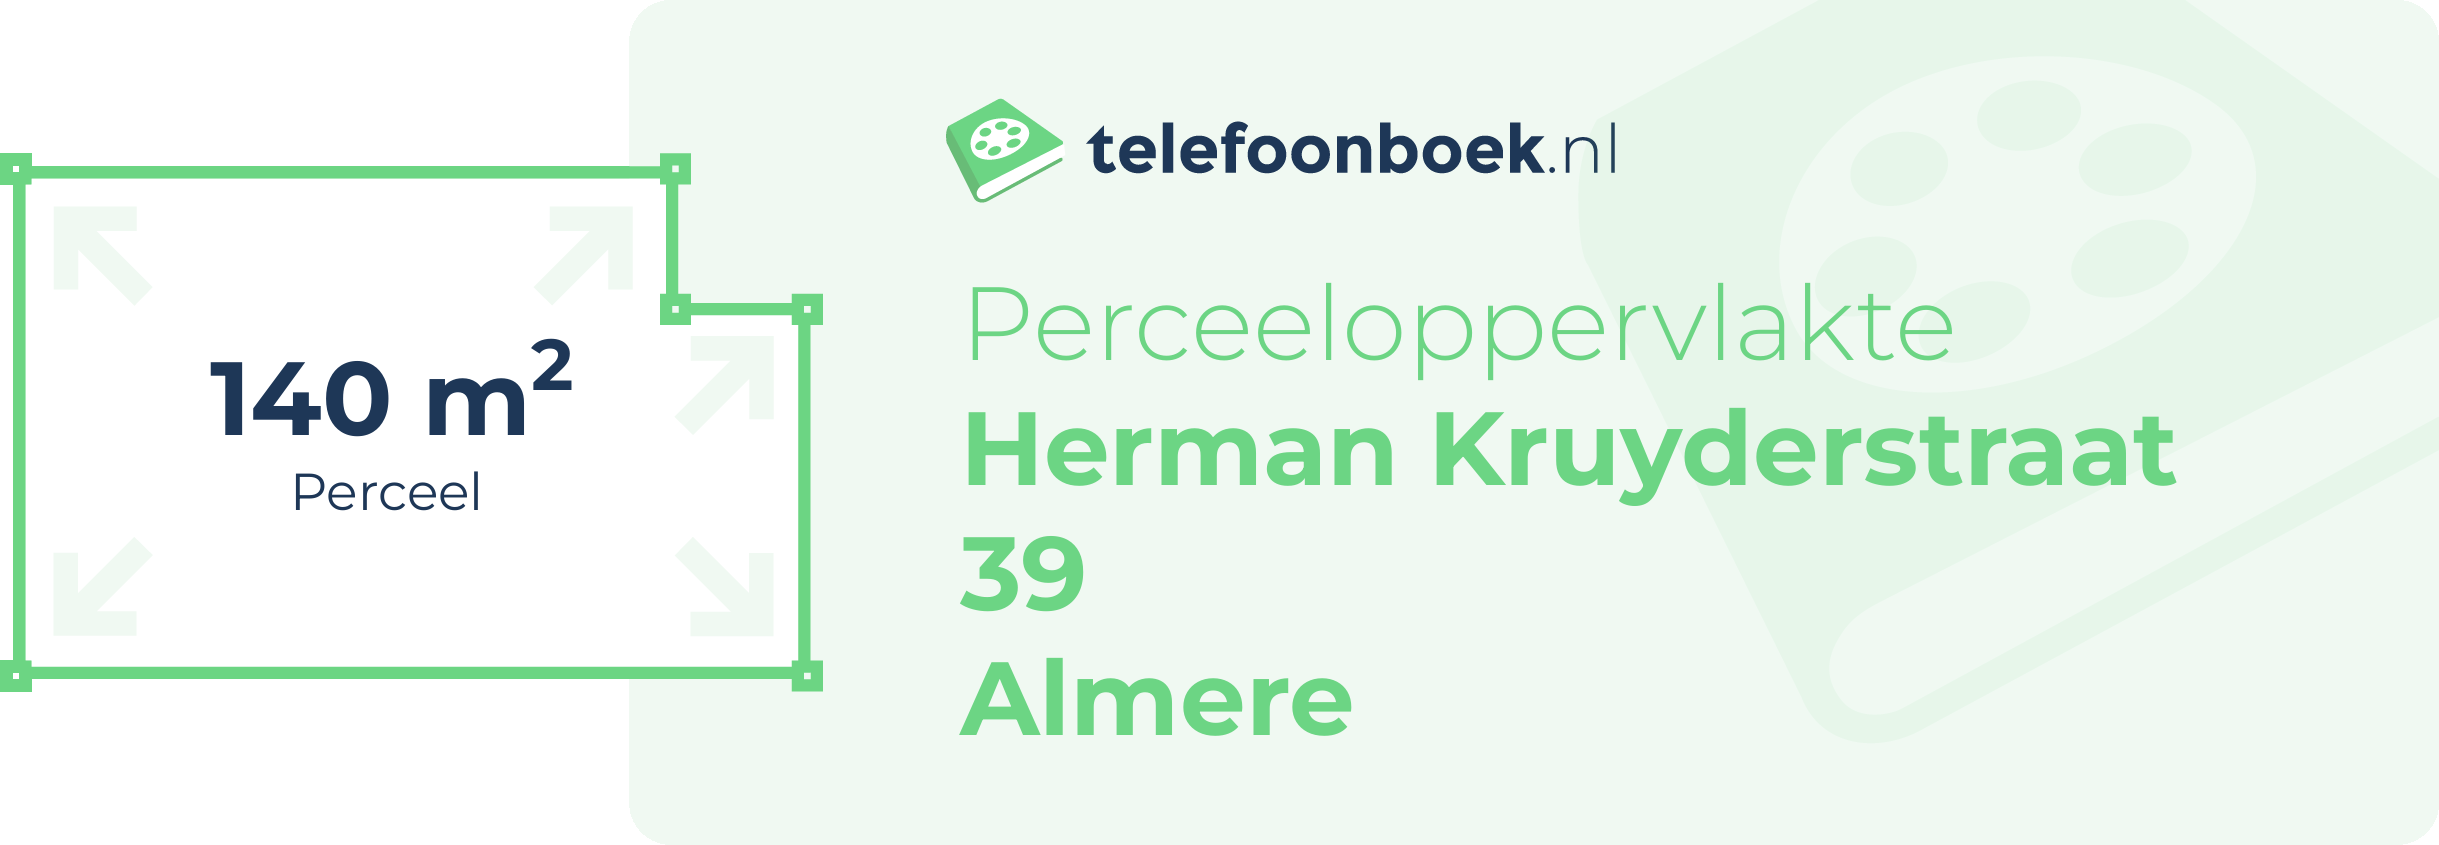 Perceeloppervlakte Herman Kruyderstraat 39 Almere